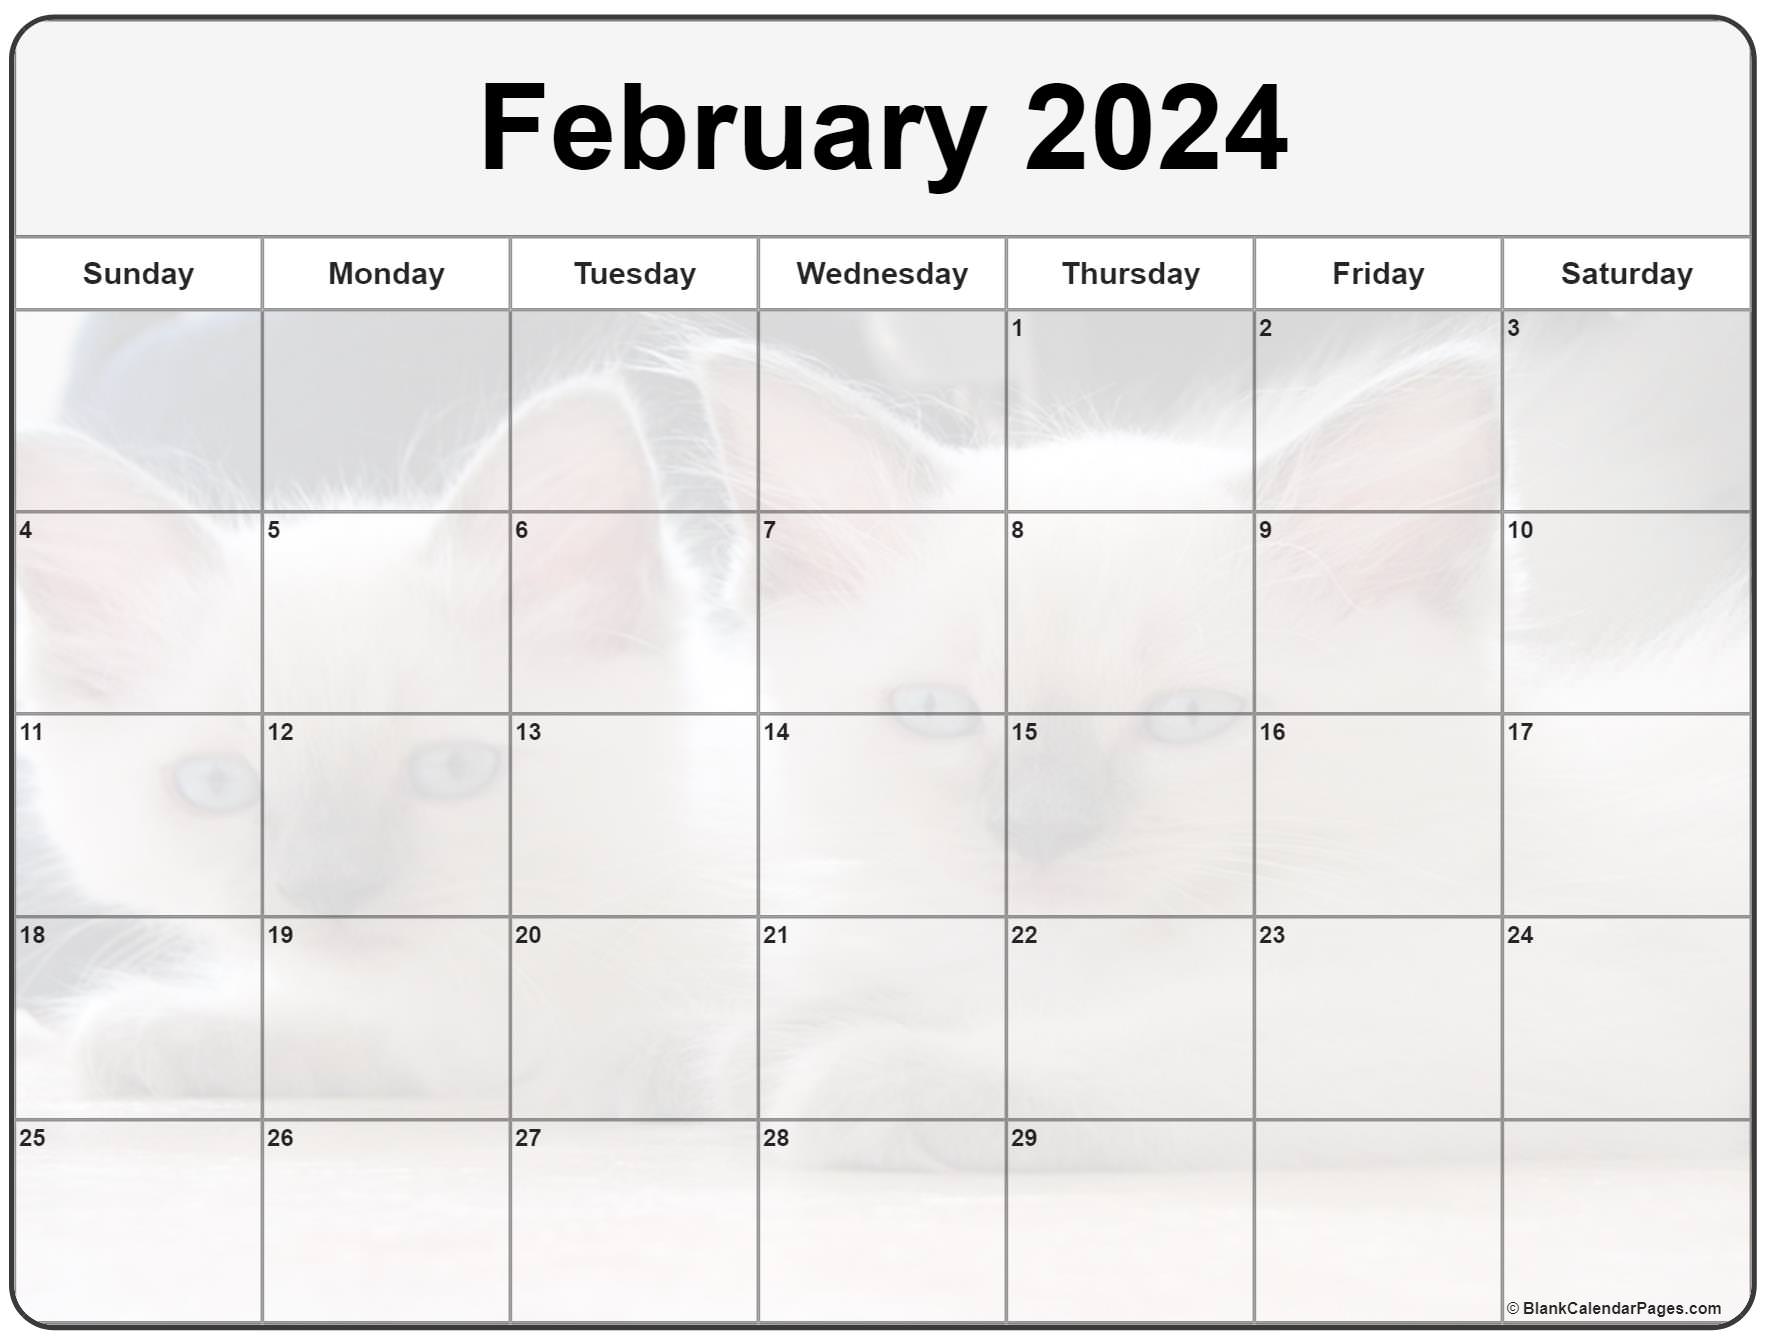 february-2023-calendar-free-printable-calendar-february-2023-calendar